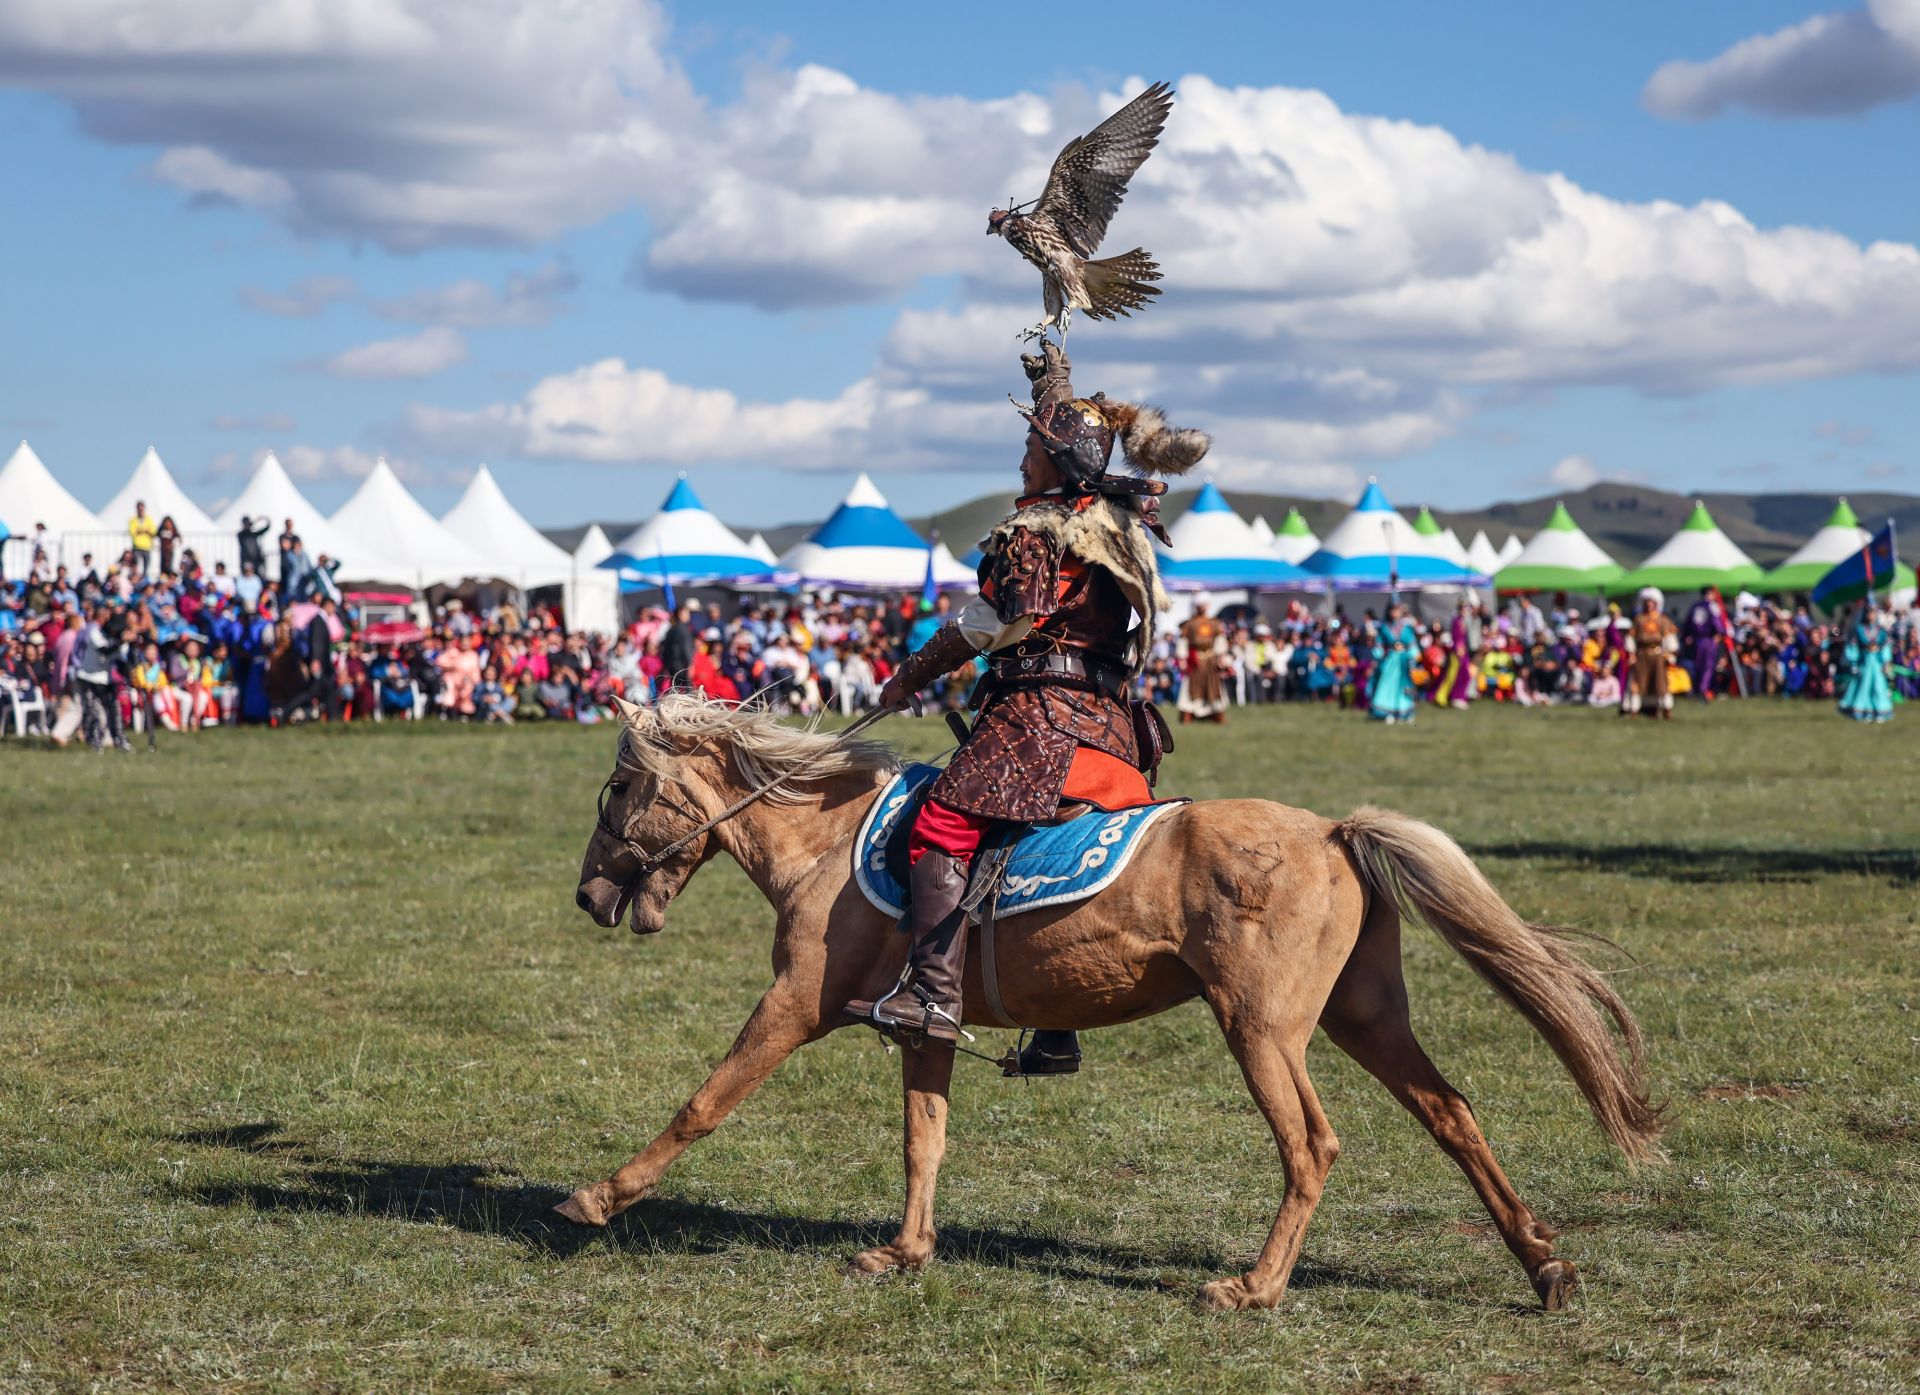 外蒙古国家文化风俗图片